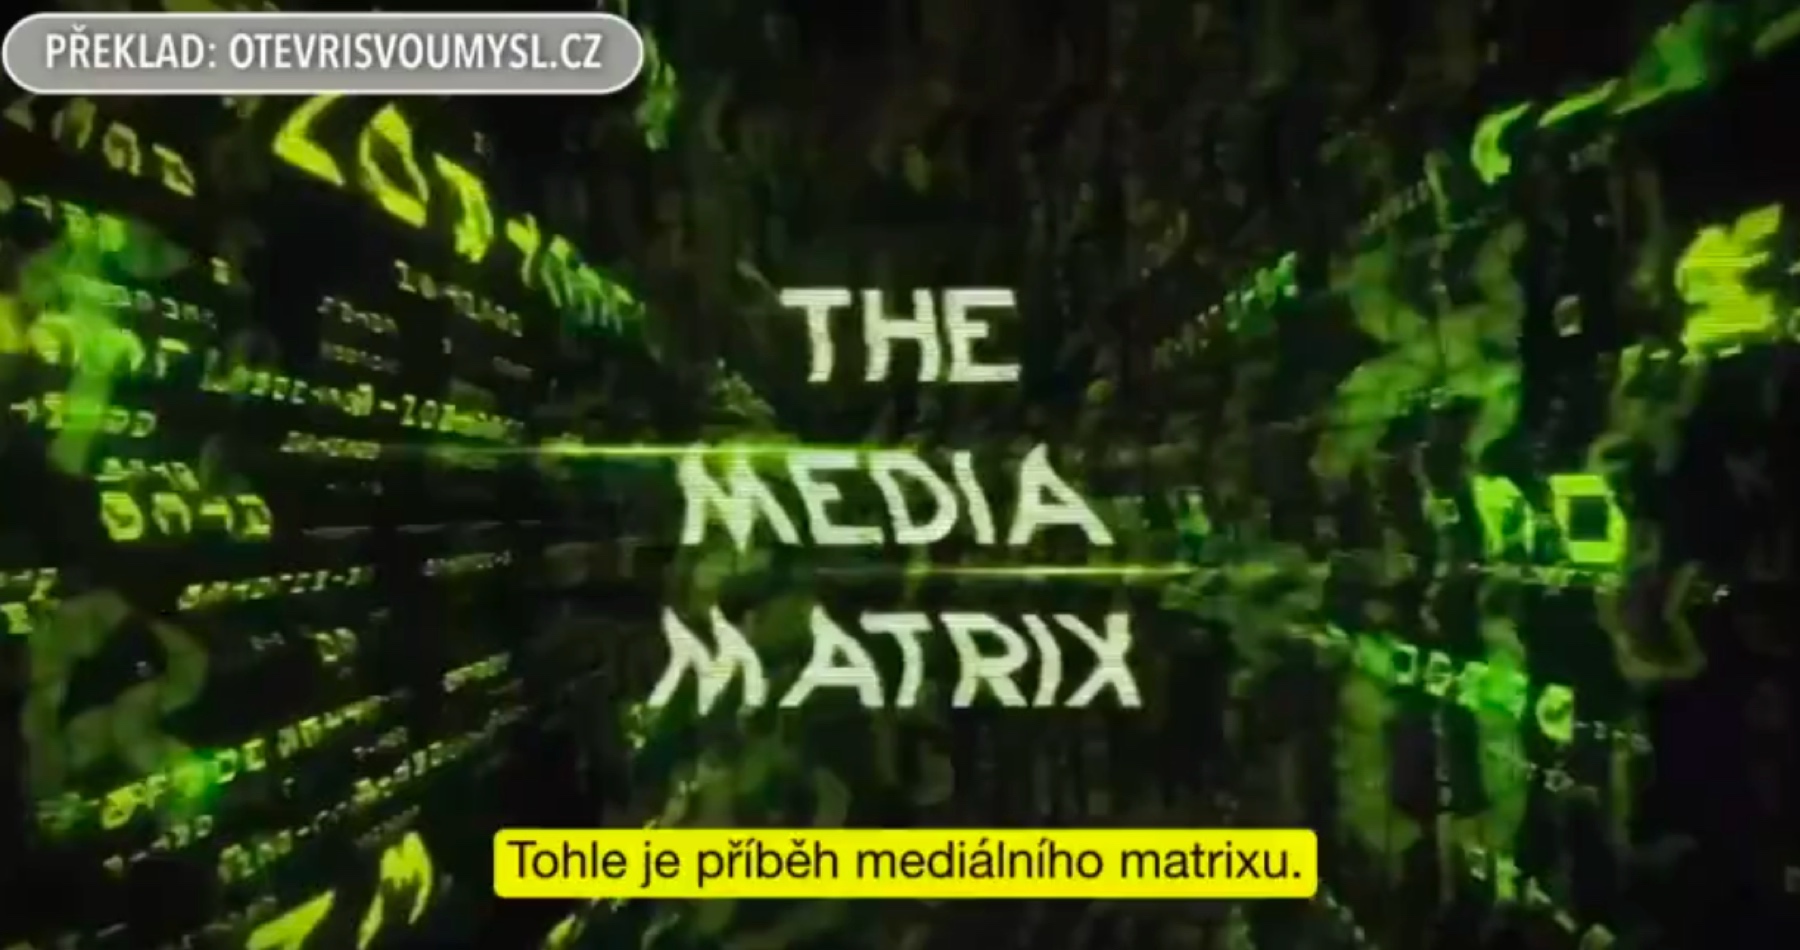 VIDEO: Gutenbergovo spiknutí aneb Příběh mediálního matrixu